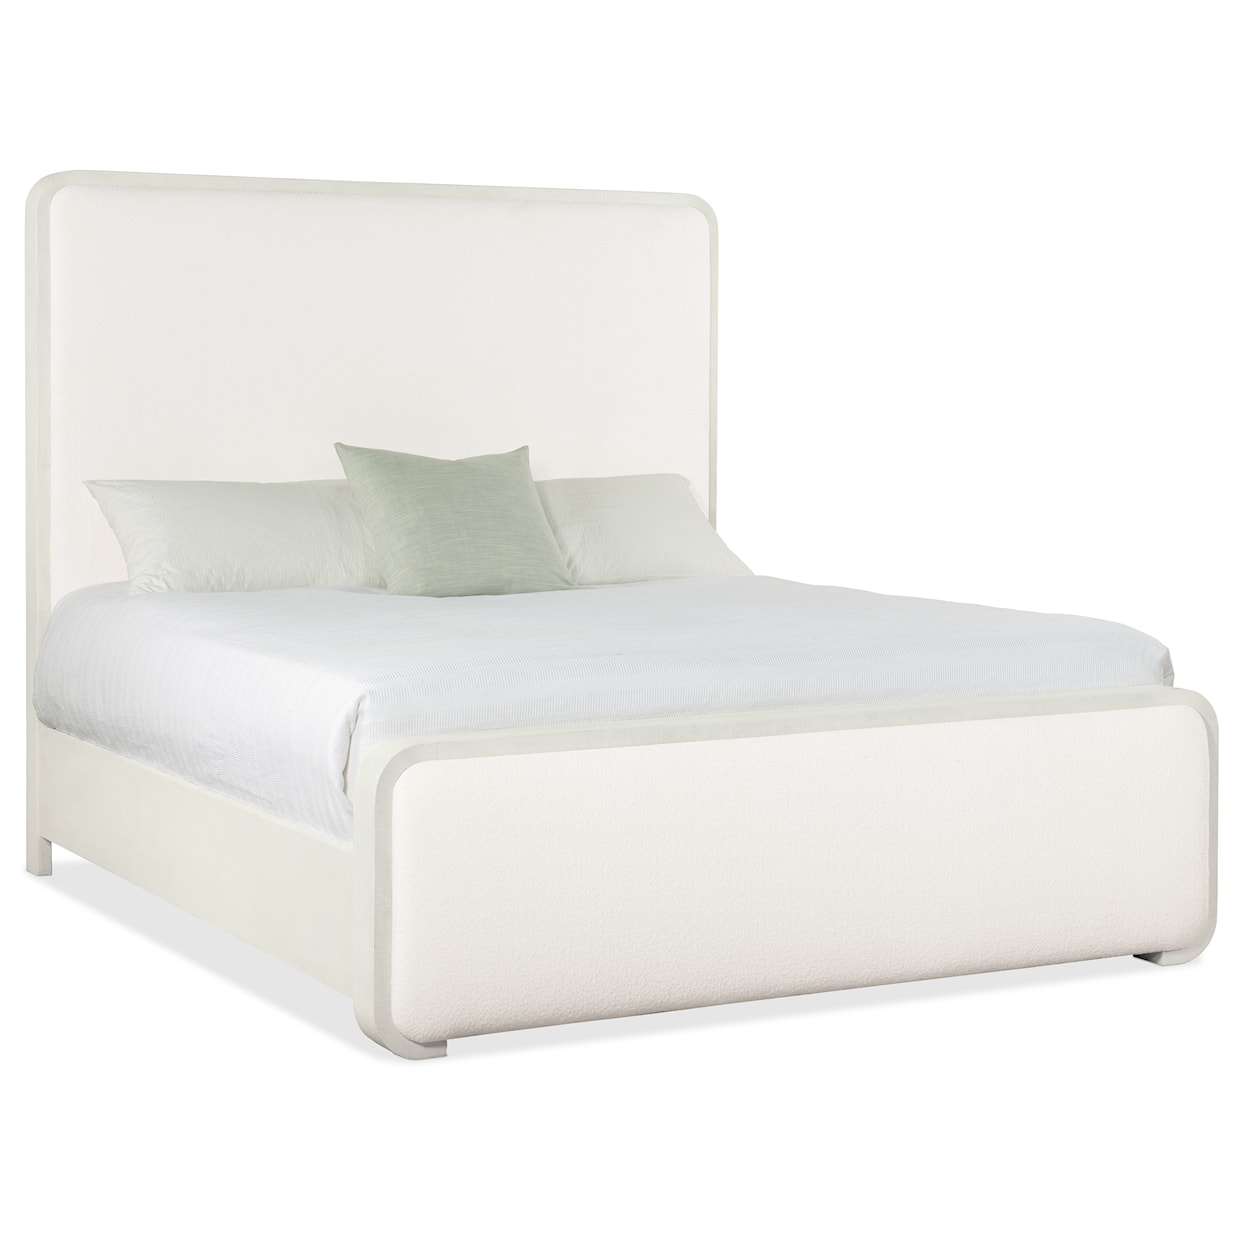 Hooker Furniture Serenity King Panel Bed